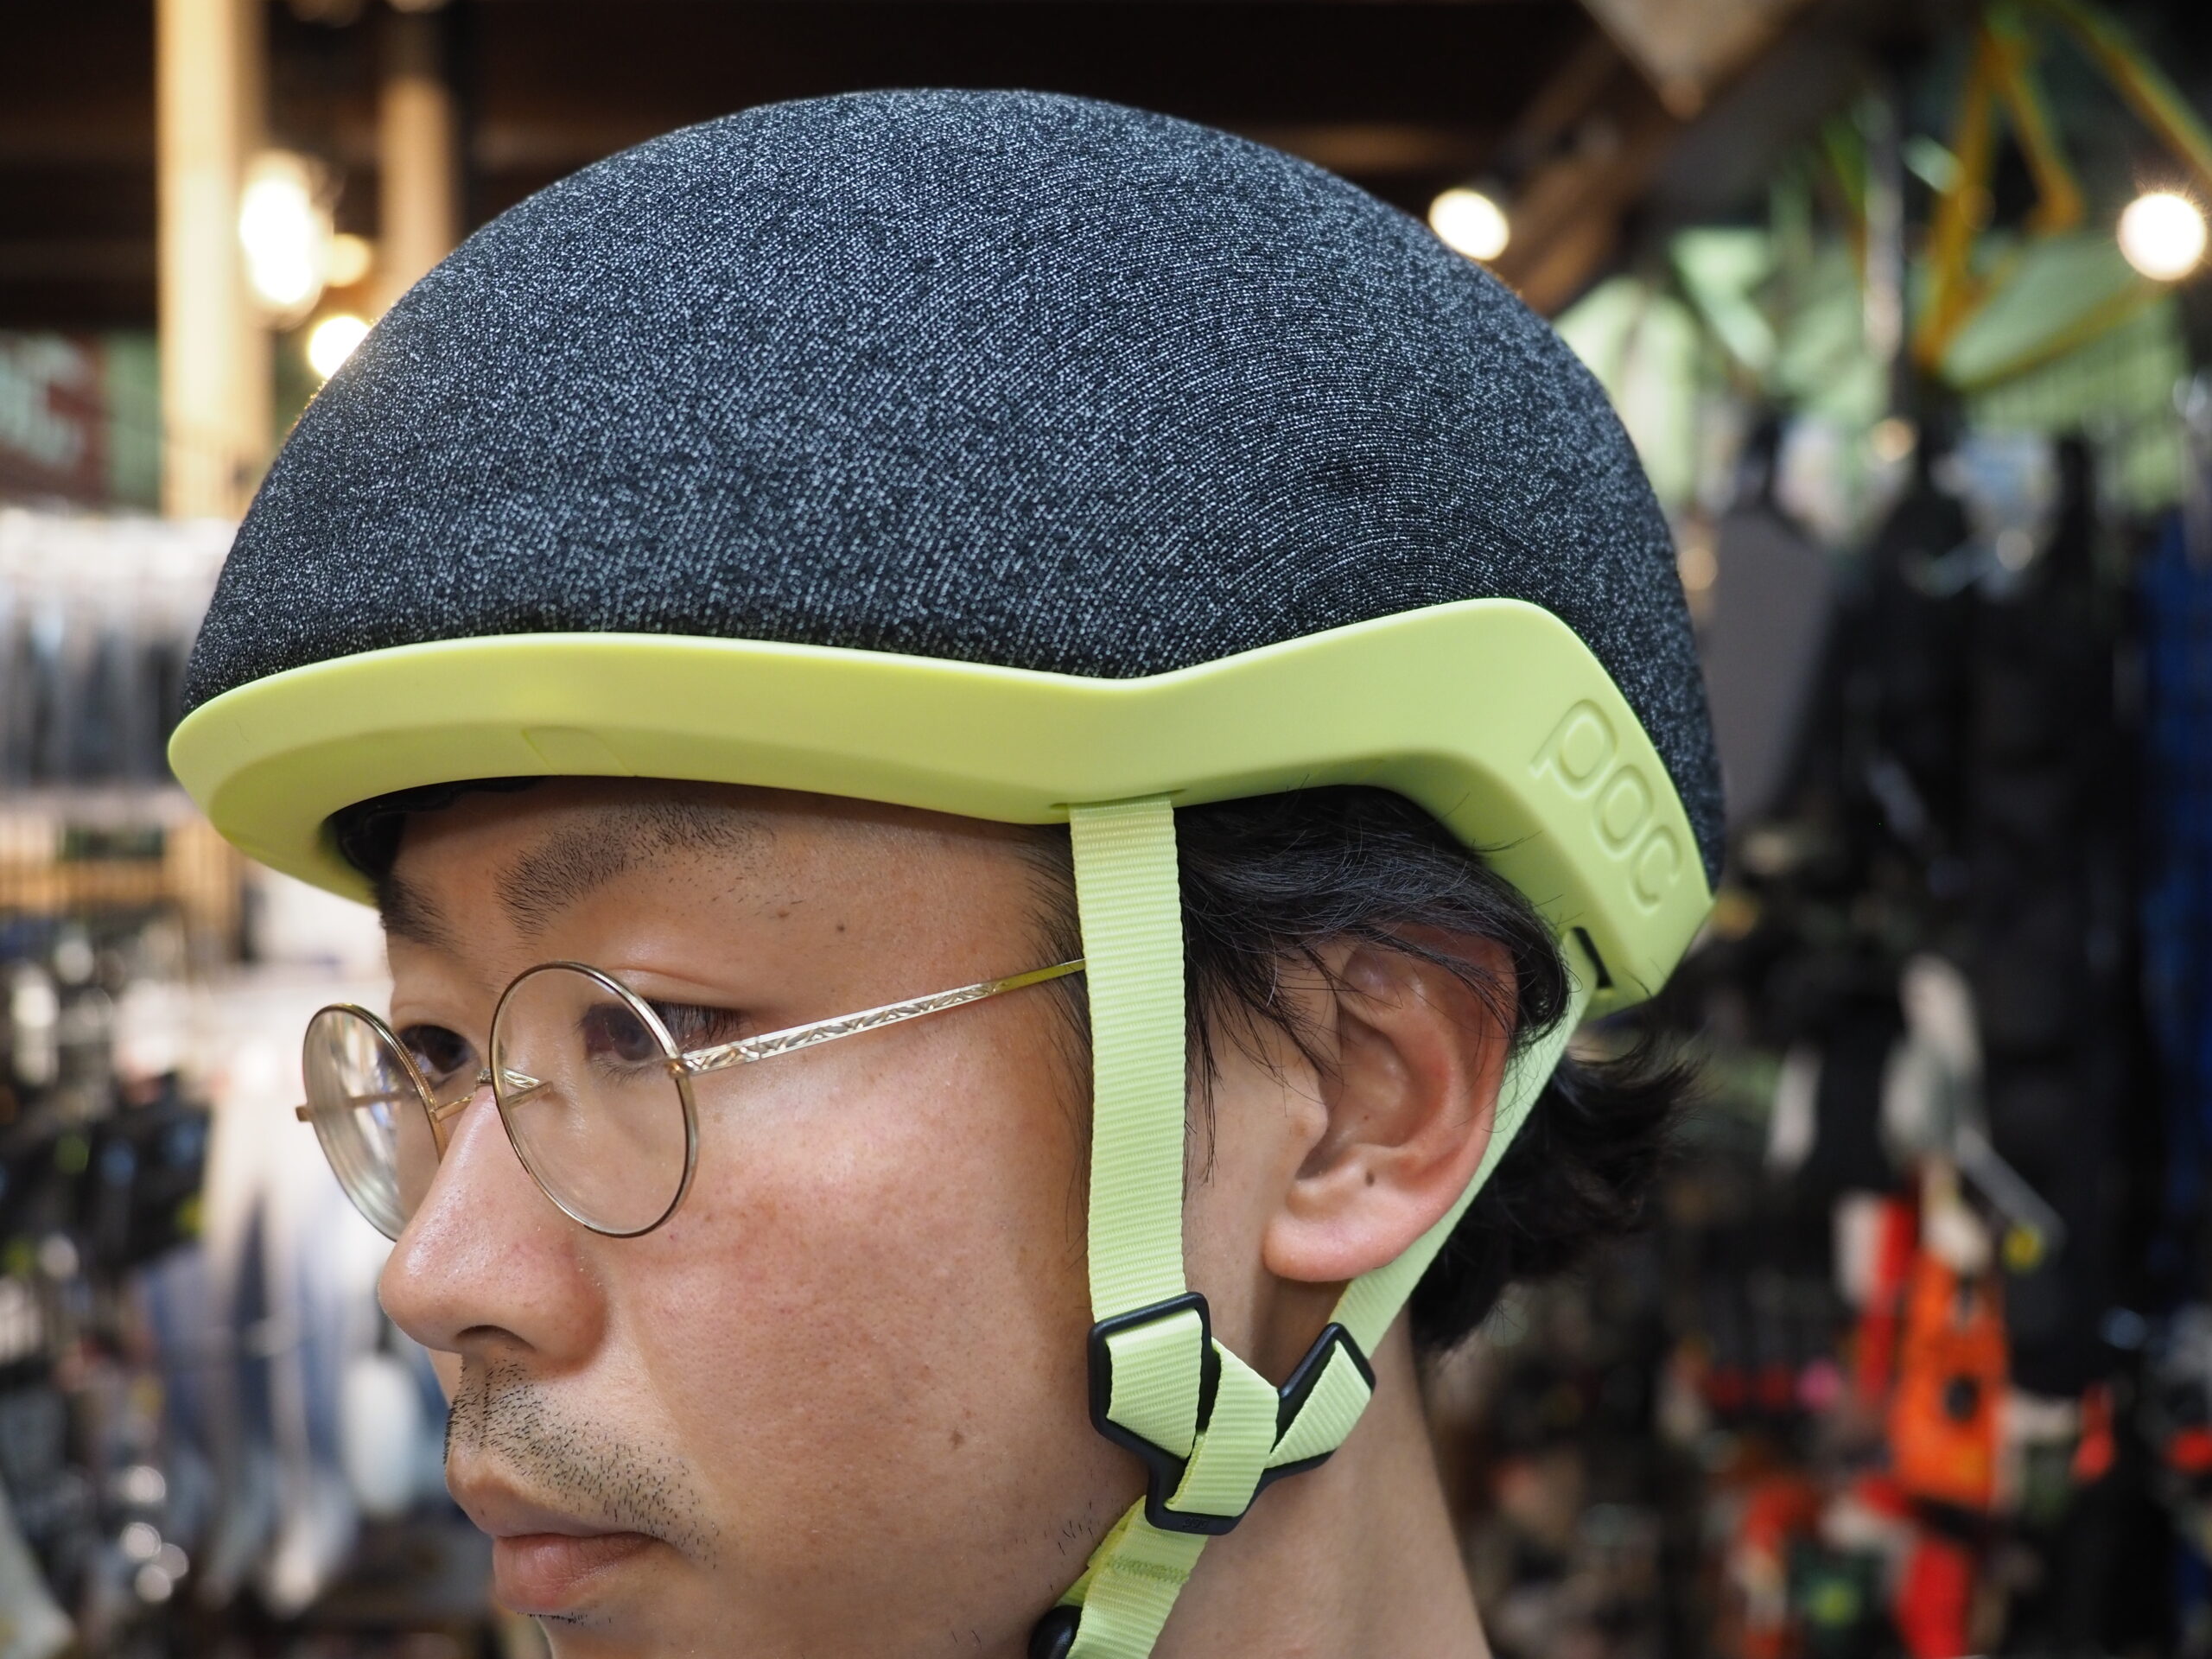 街乗りヘルメットの街乗り用ヘルメット入荷しました